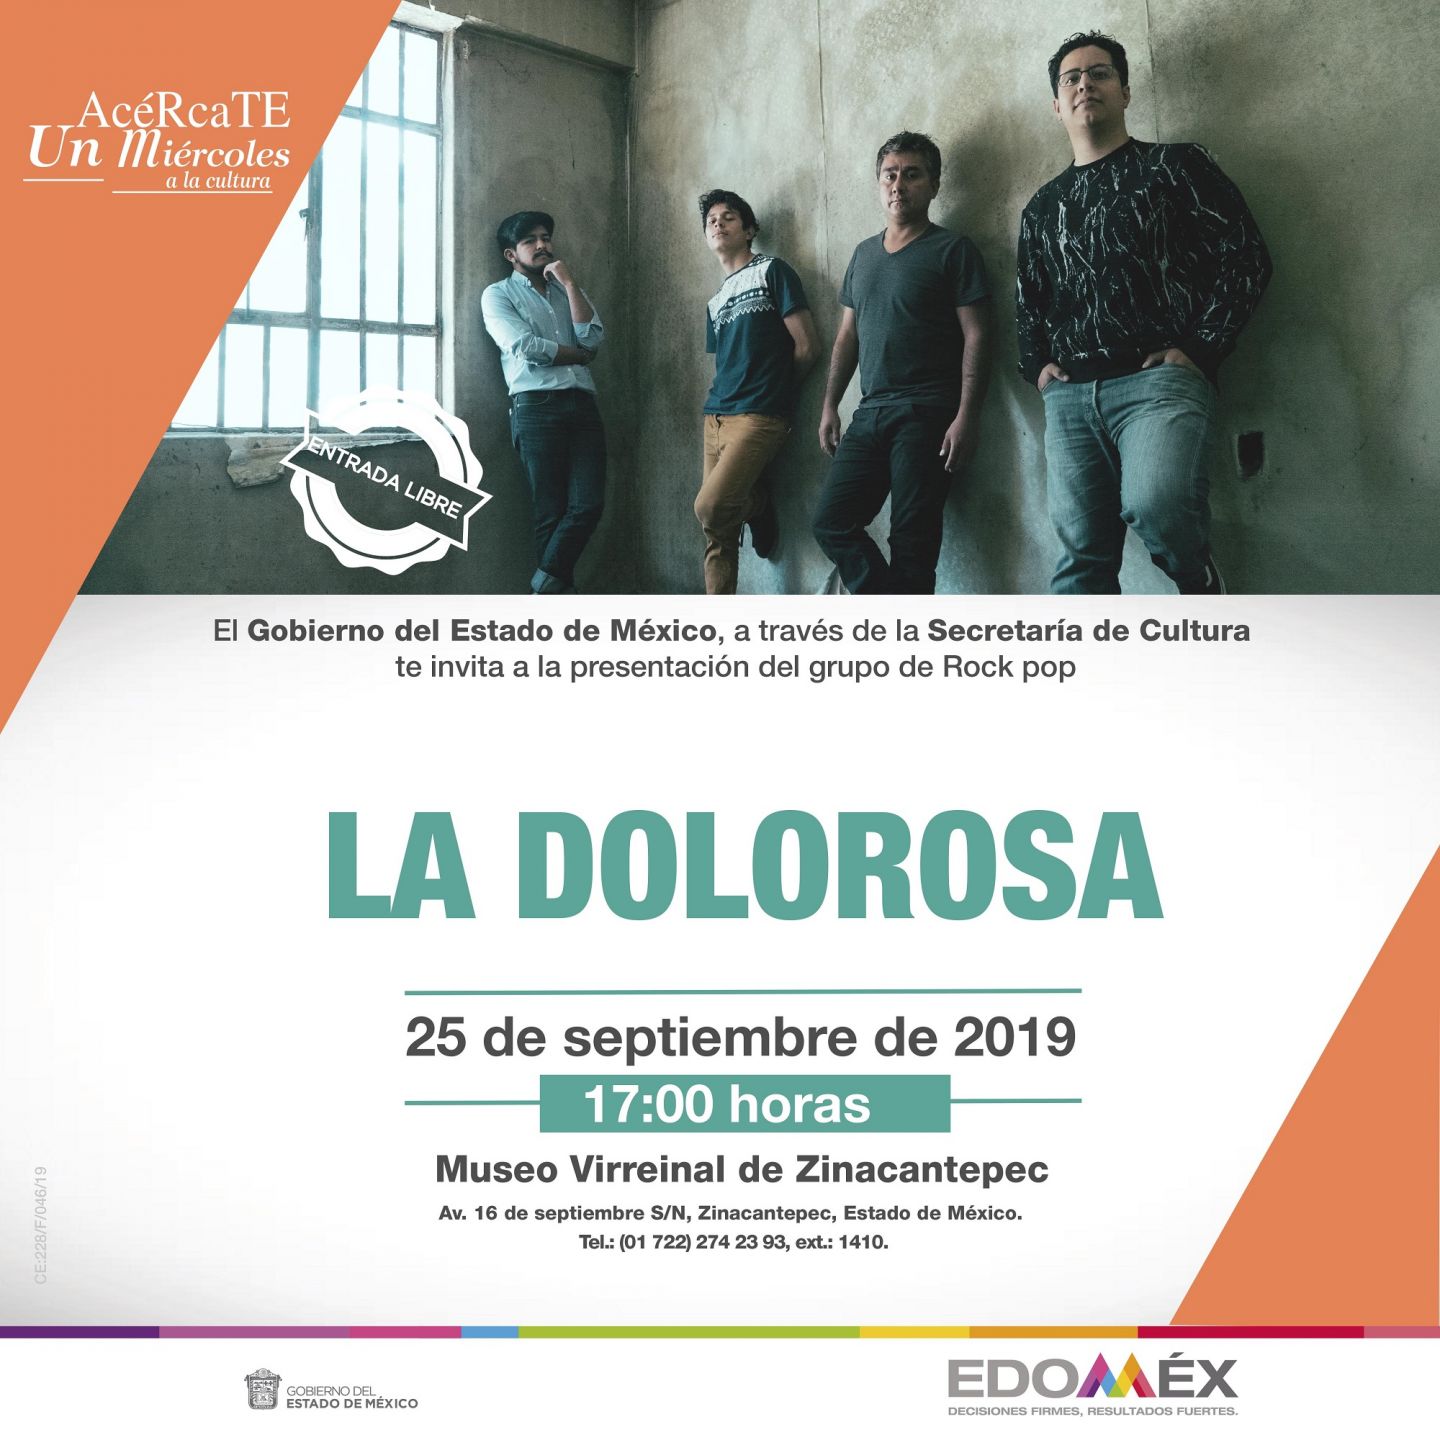 Ofrece " la dolorosa" concierto en museo virreinal de Zinacantepec 
 